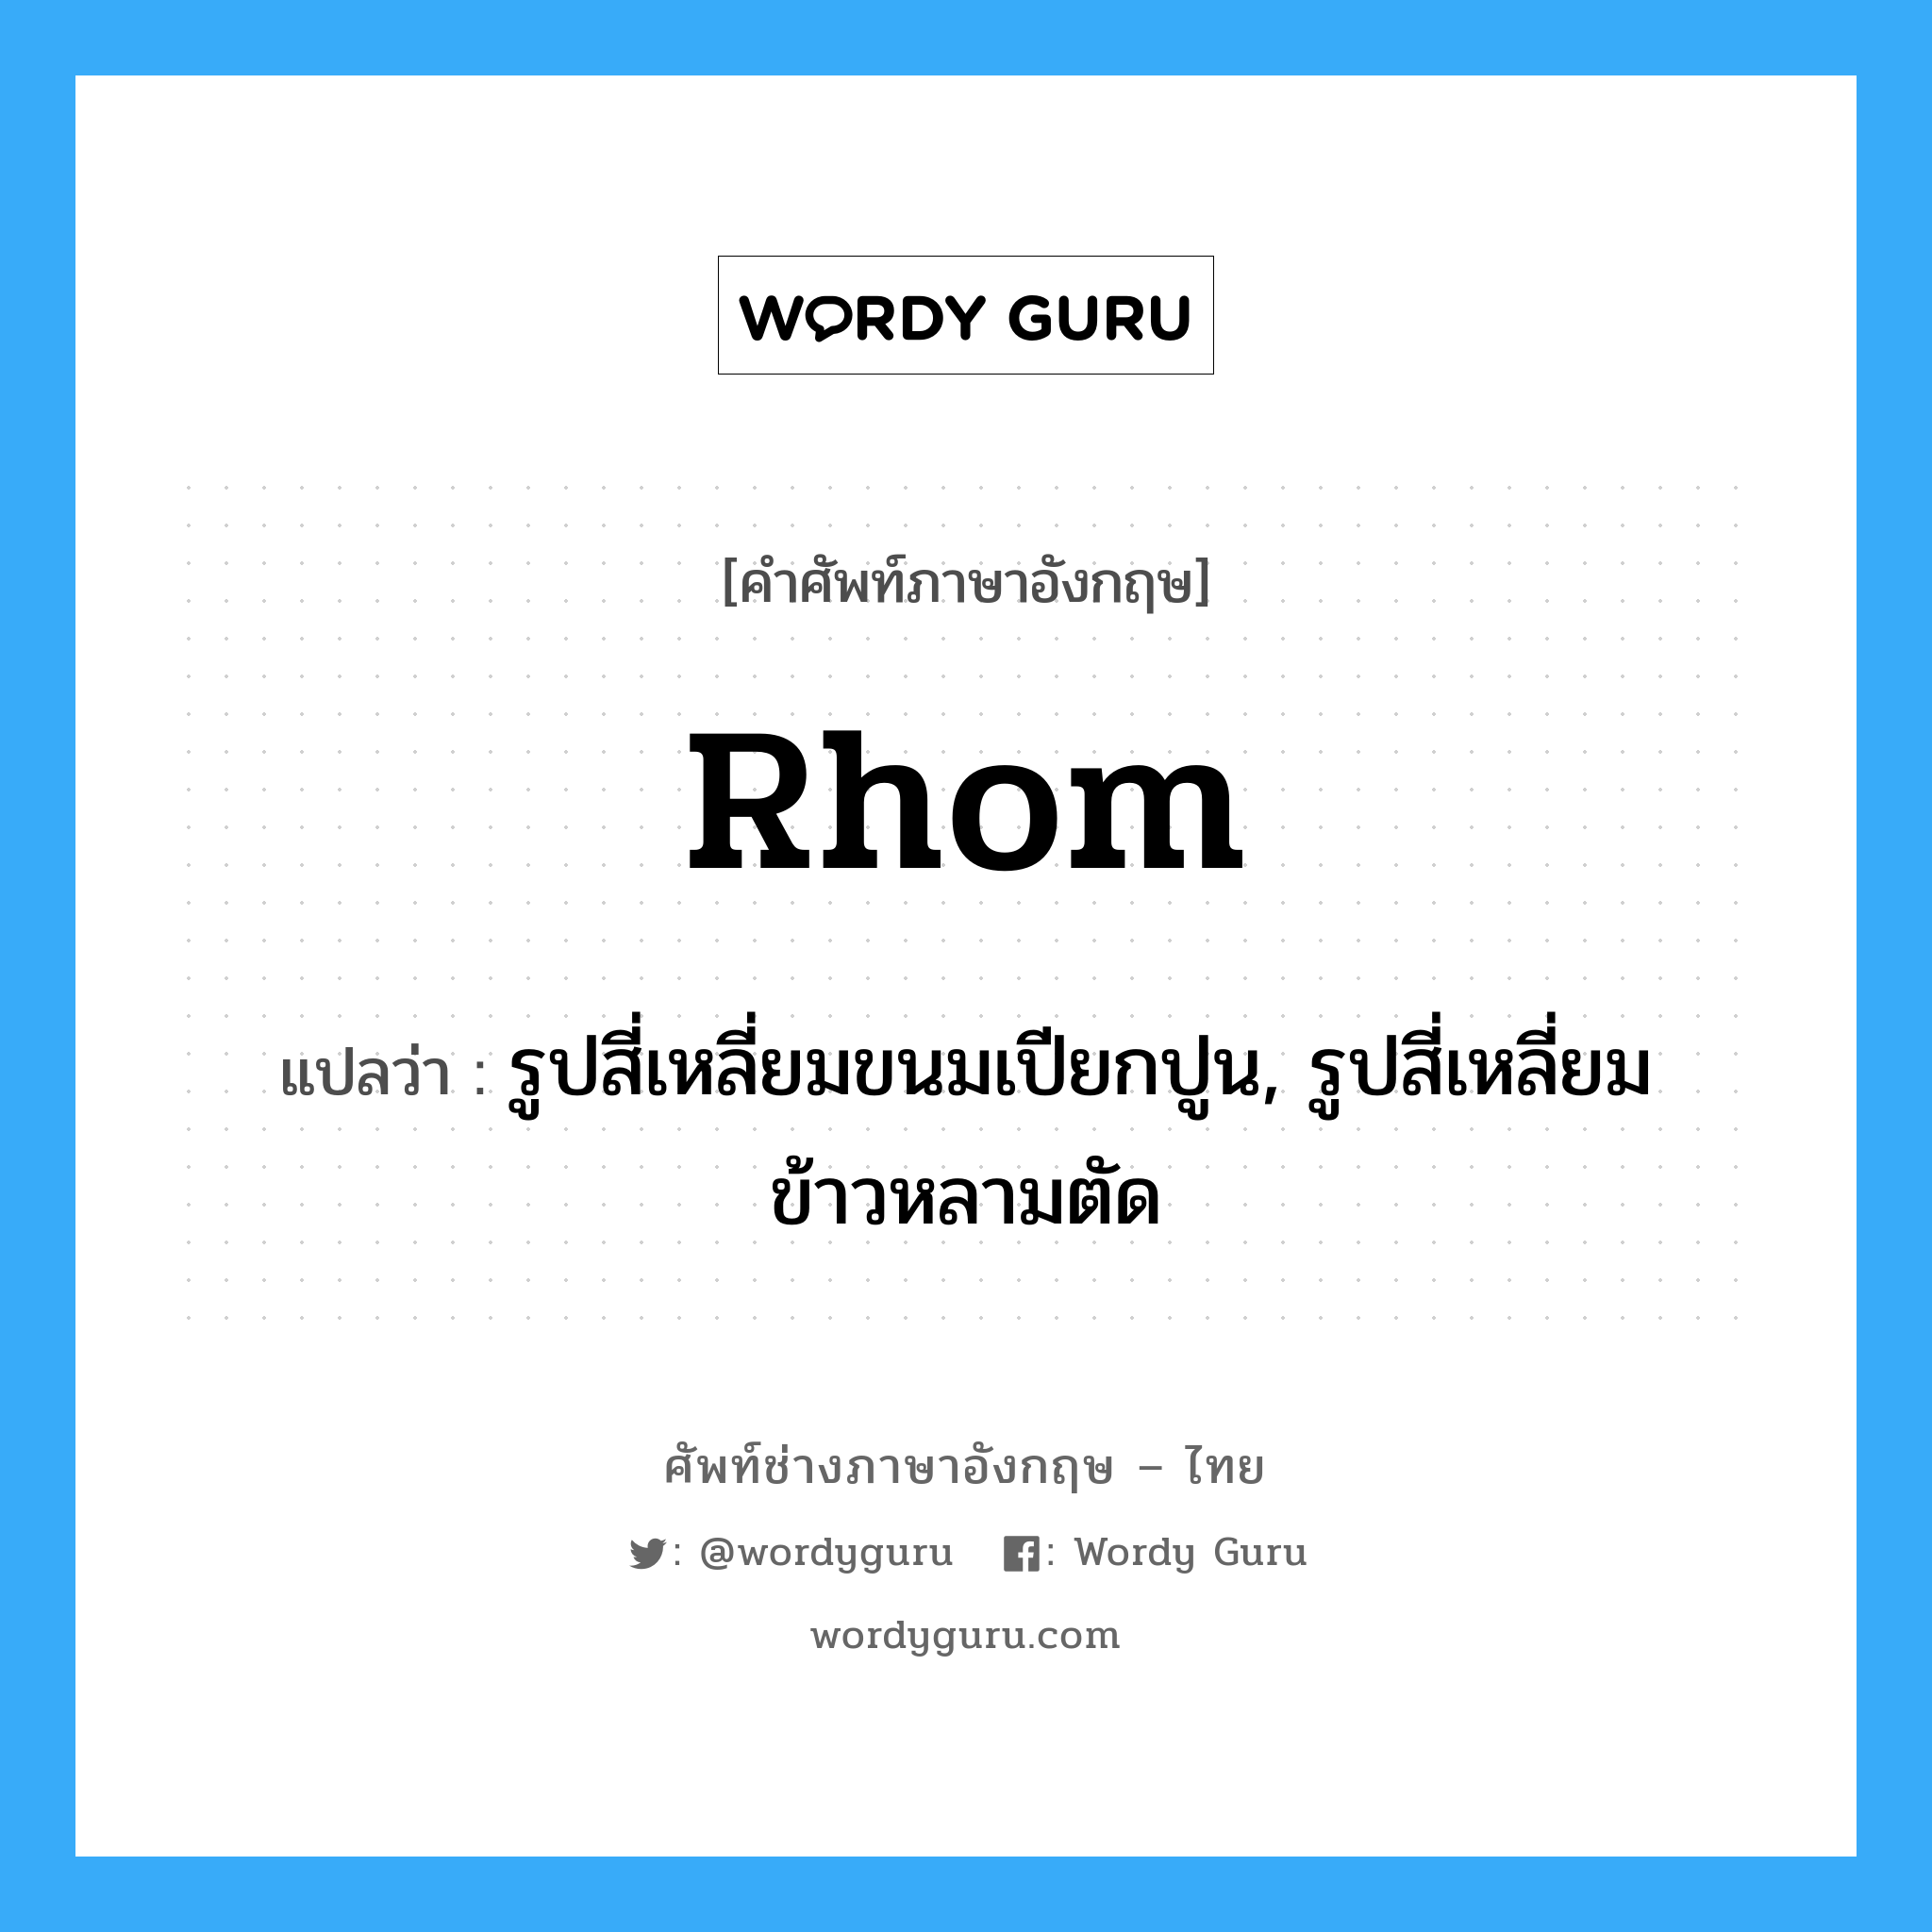 rhom แปลว่า?, คำศัพท์ช่างภาษาอังกฤษ - ไทย rhom คำศัพท์ภาษาอังกฤษ rhom แปลว่า รูปสี่เหลี่ยมขนมเปียกปูน, รูปสี่เหลี่ยมข้าวหลามตัด